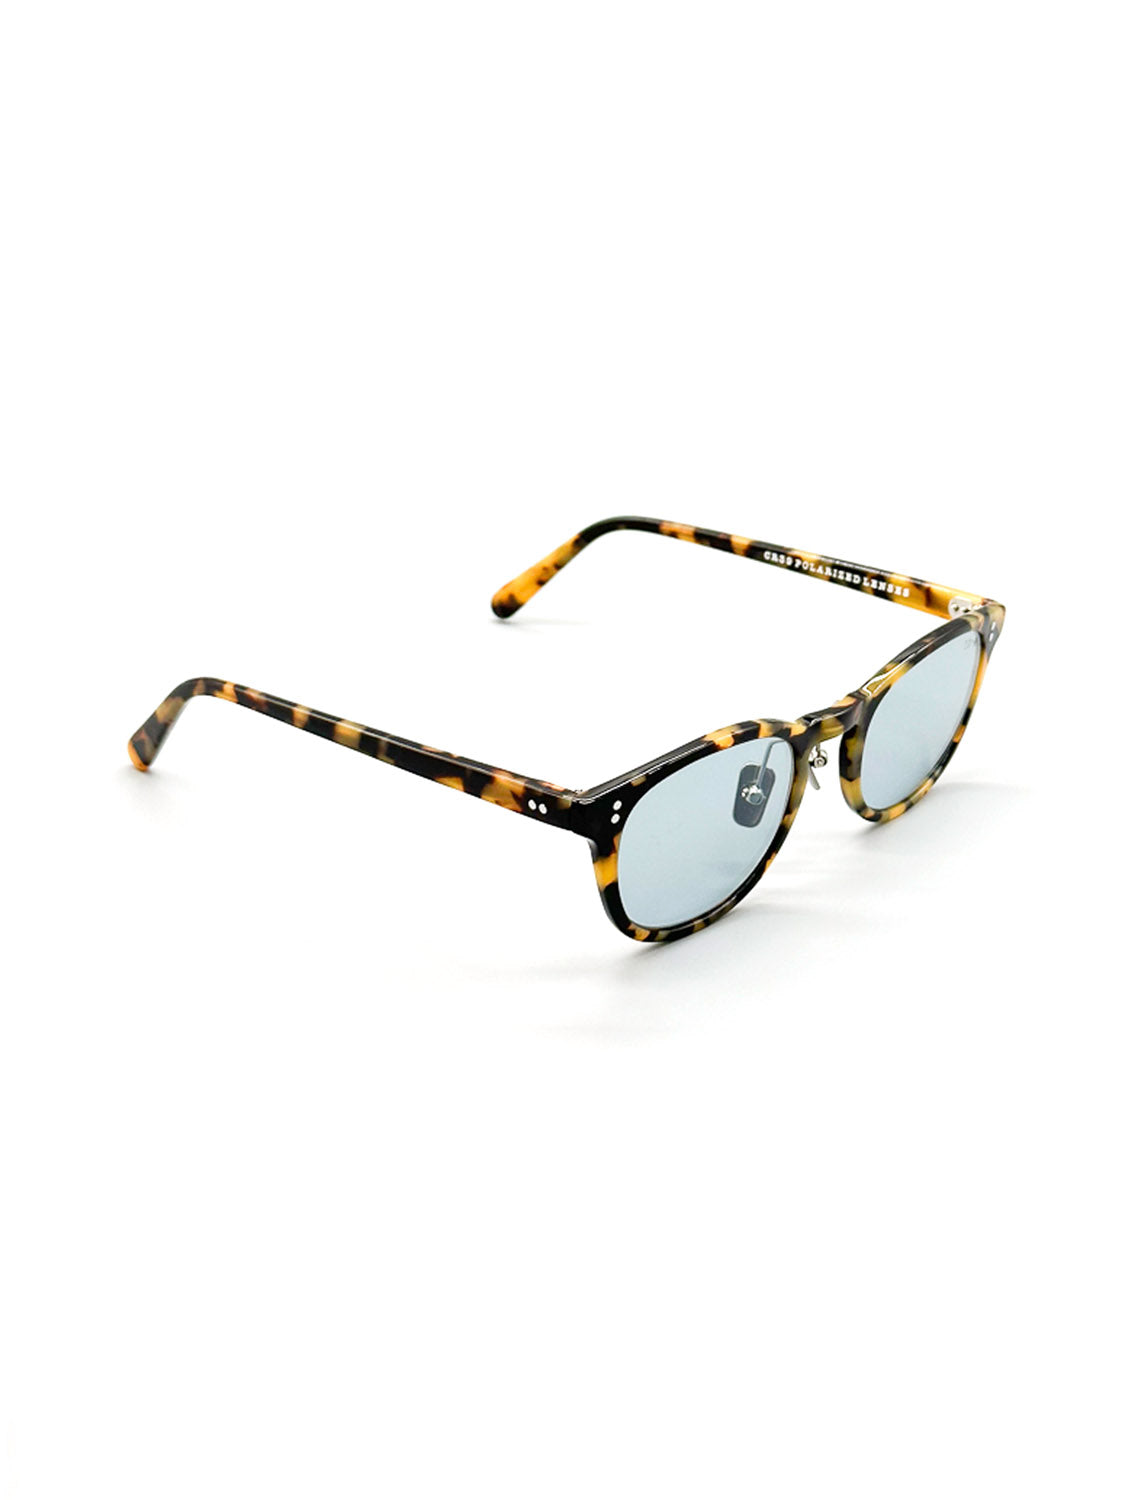 A130LB ID Polarized Sunglasses